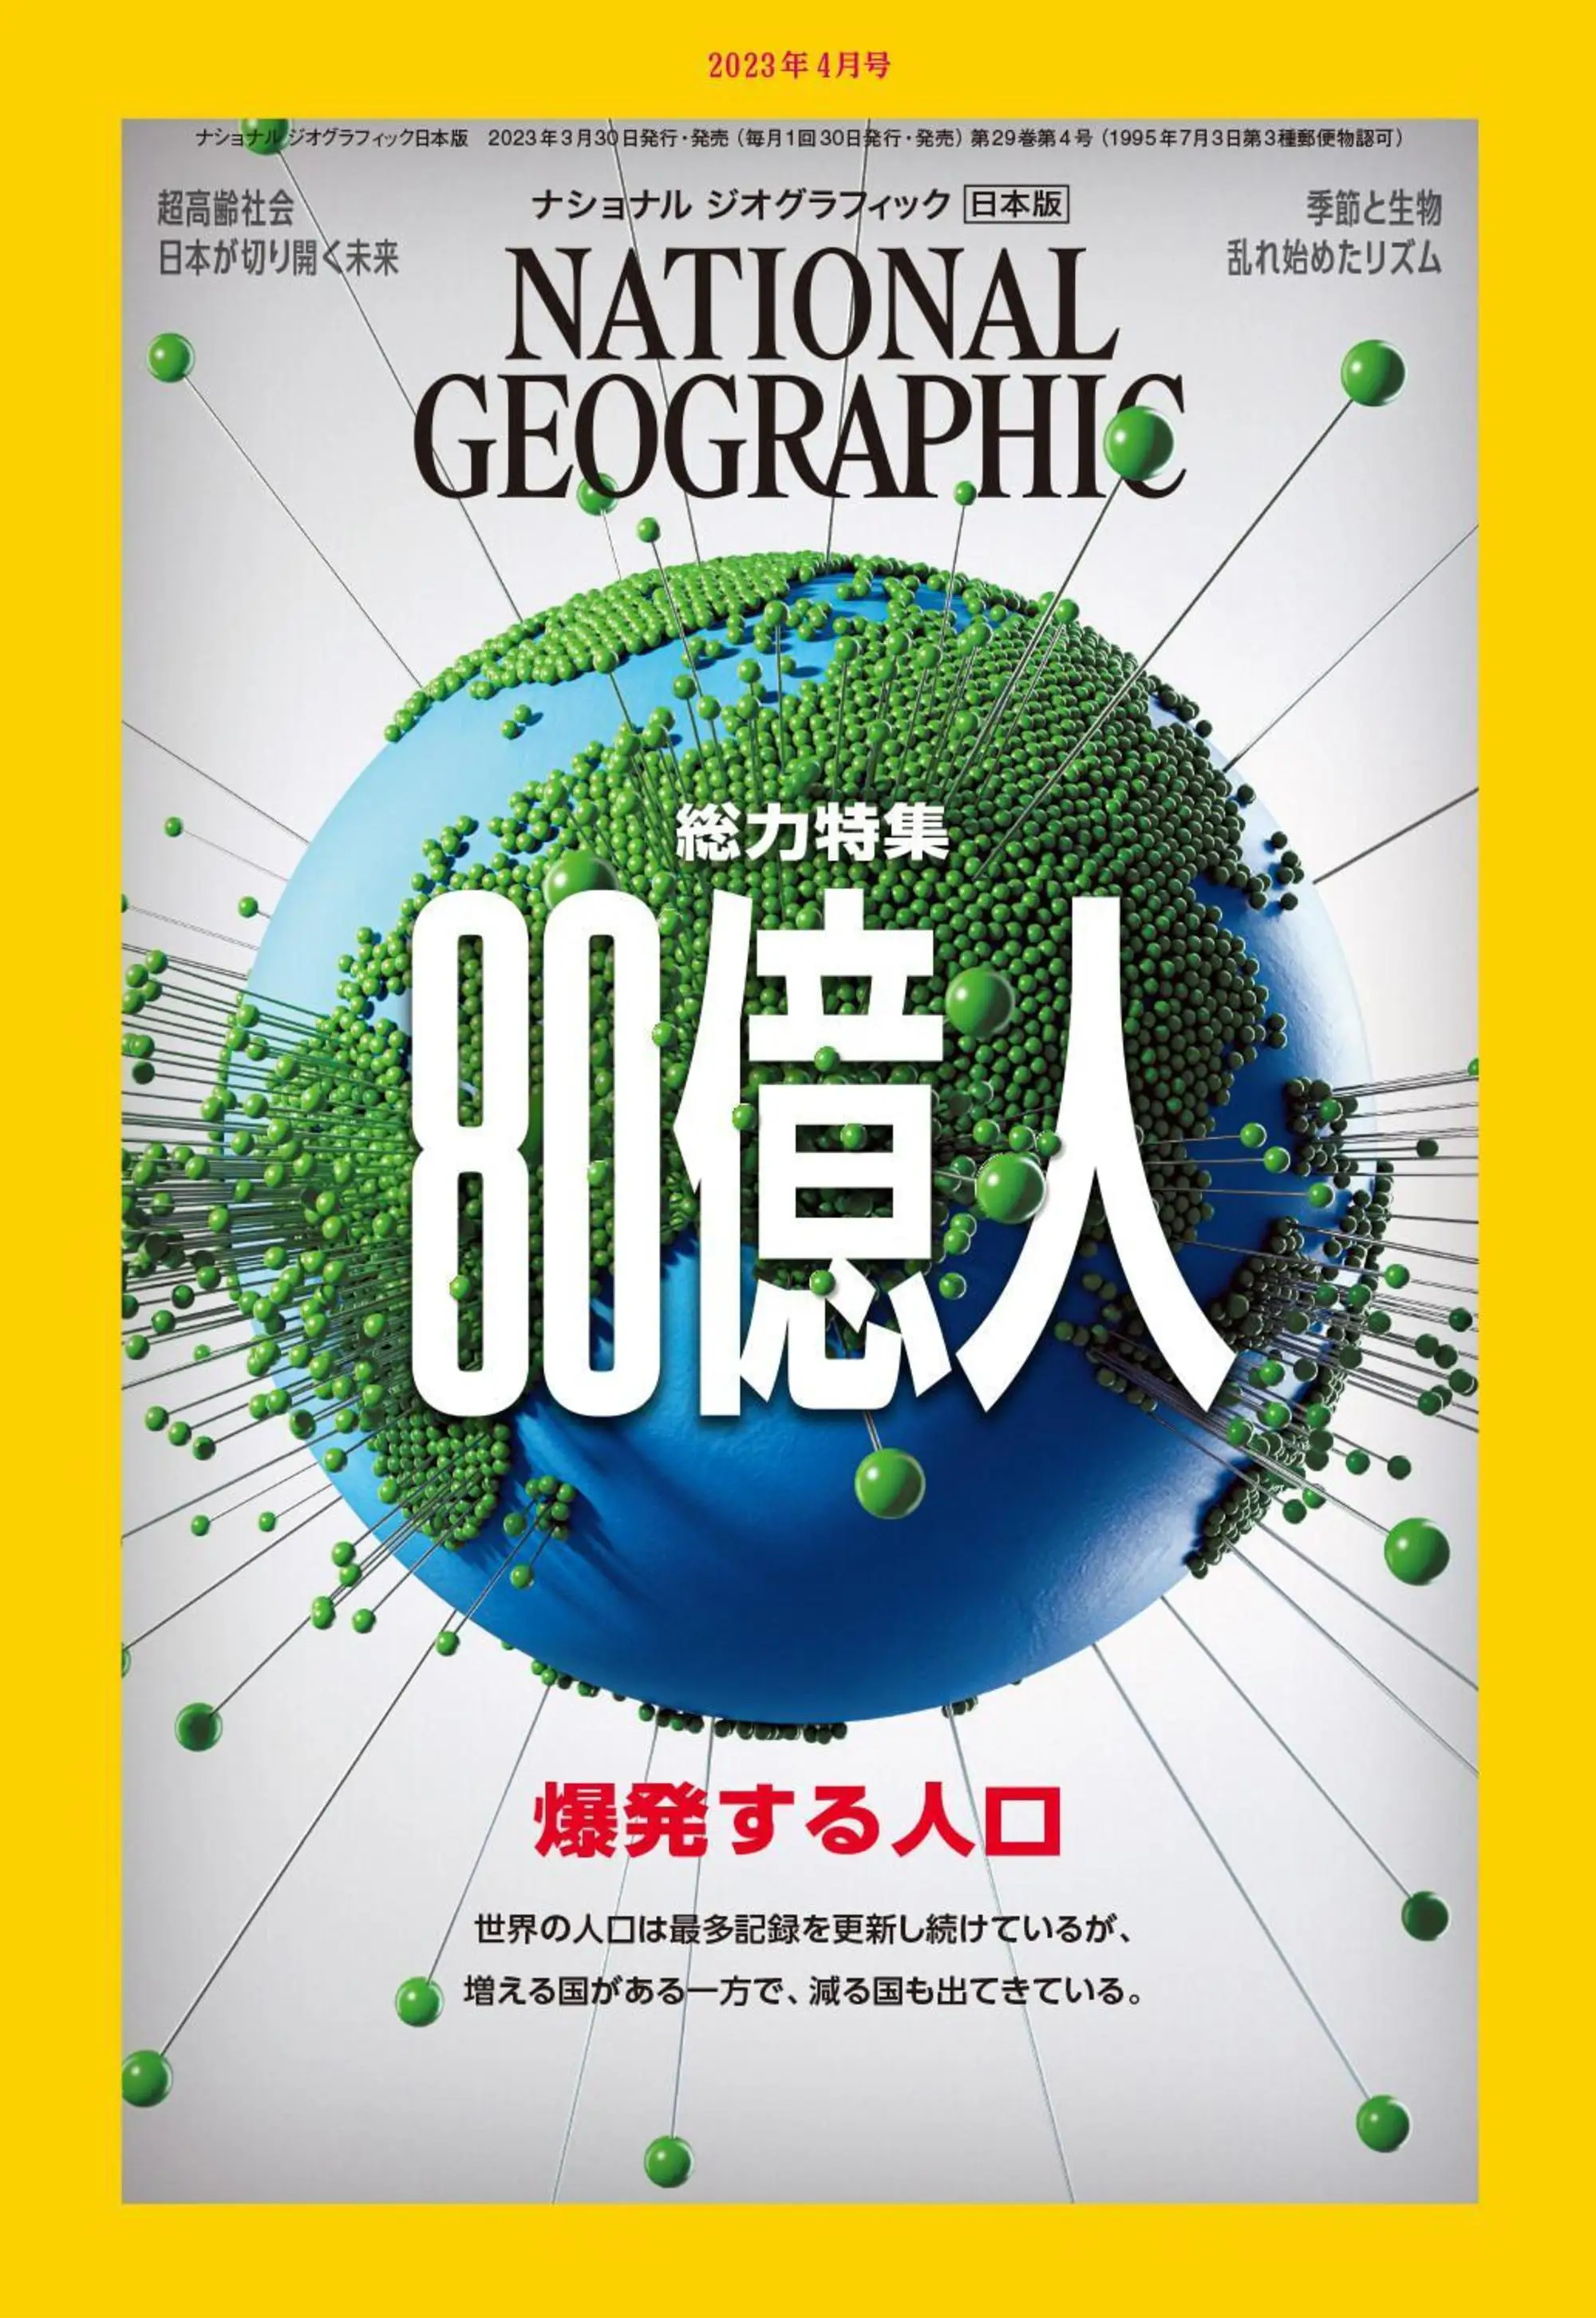 [日本版]国家地理杂志 National Geographic ナショナル ジオグラフィック電子版 2023年4月